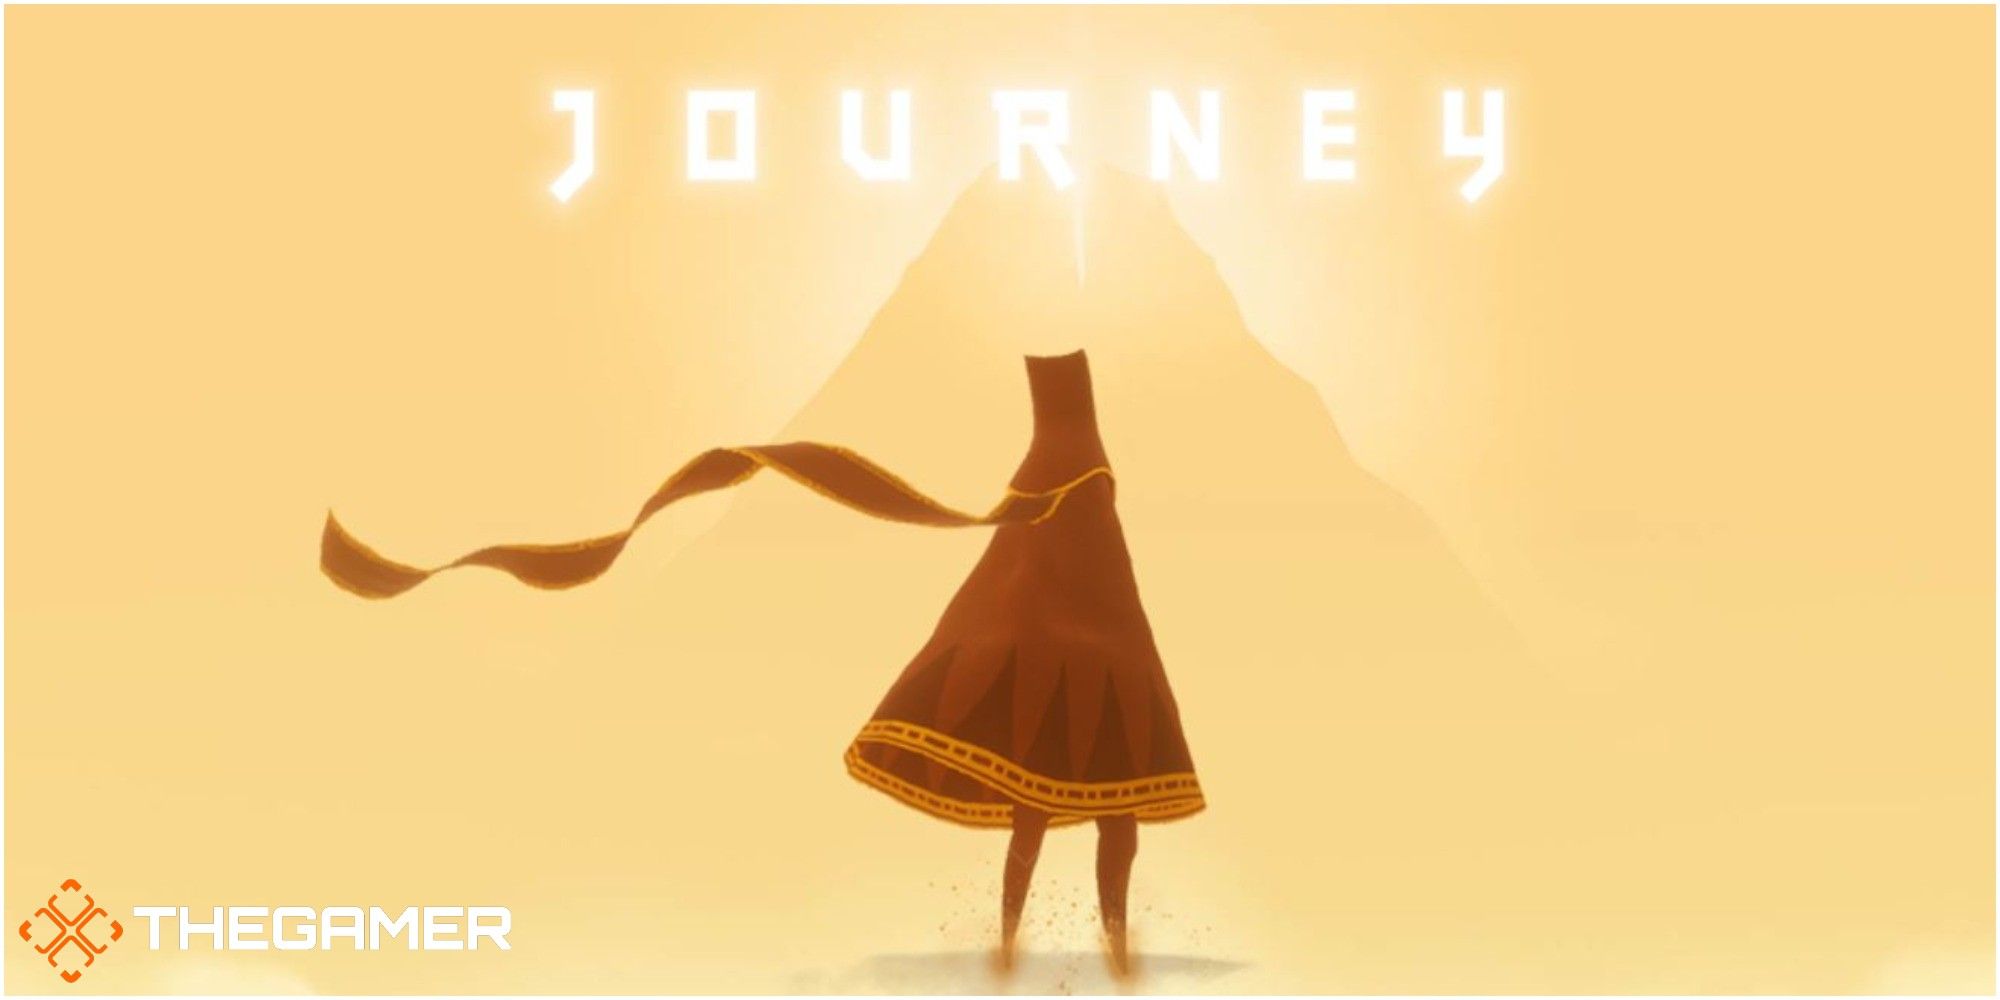 I like journey. Journey игра thatgamecompany. Journey (игра, 2012). Джорни путешествие игра. Journey игра логотип.